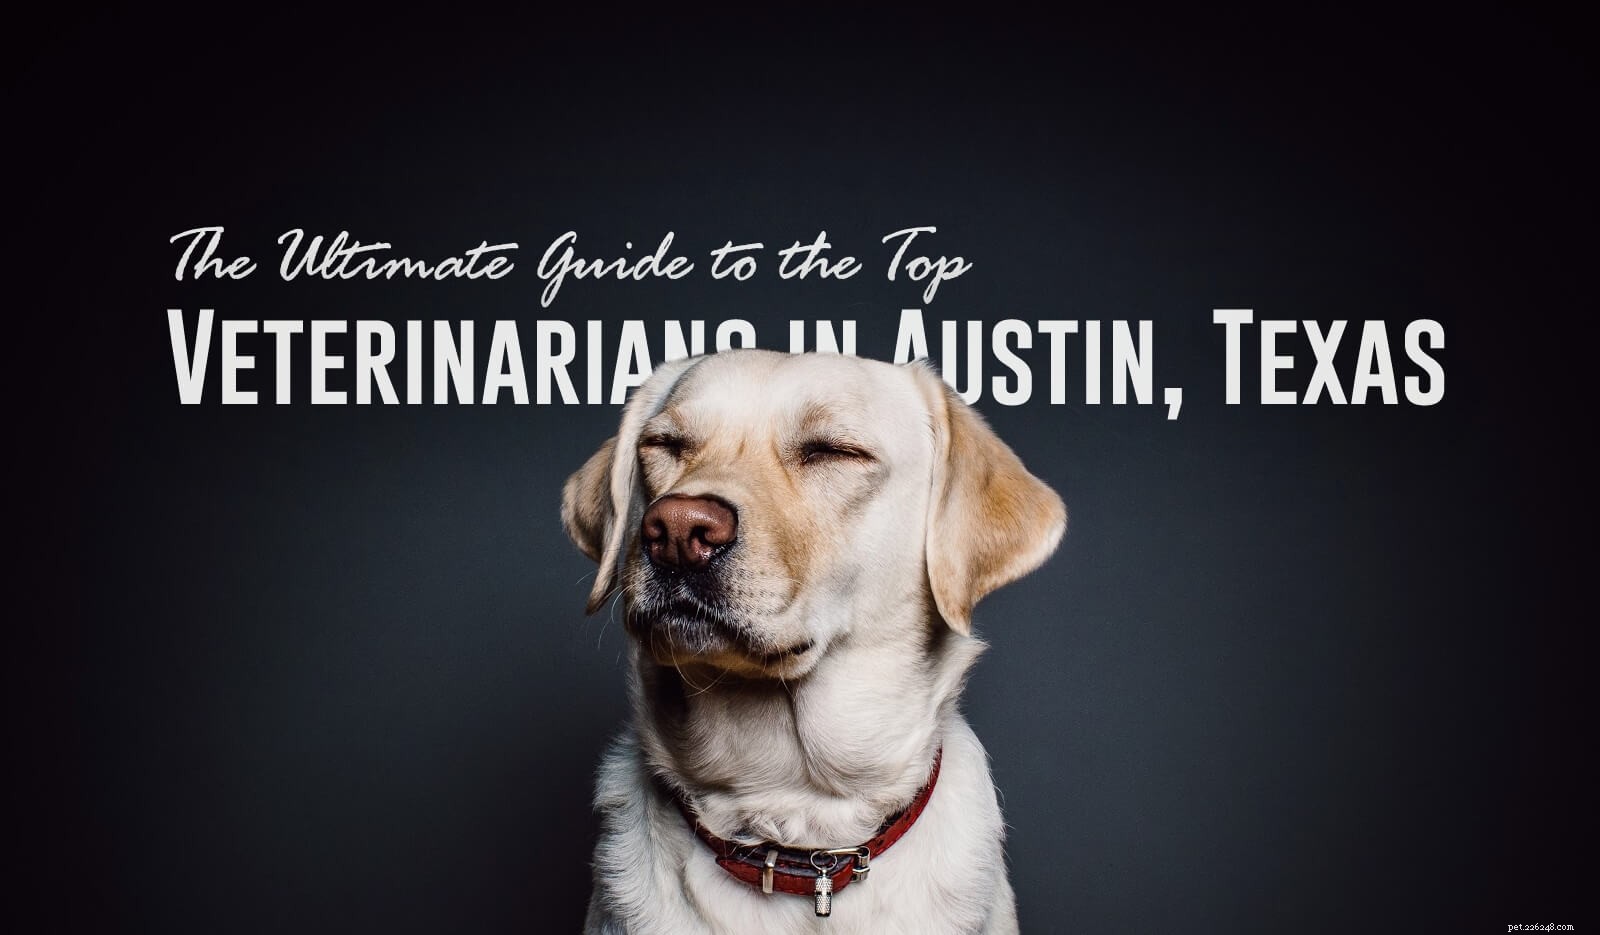 テキサス州オースティンのトップ獣医への究極のガイド 